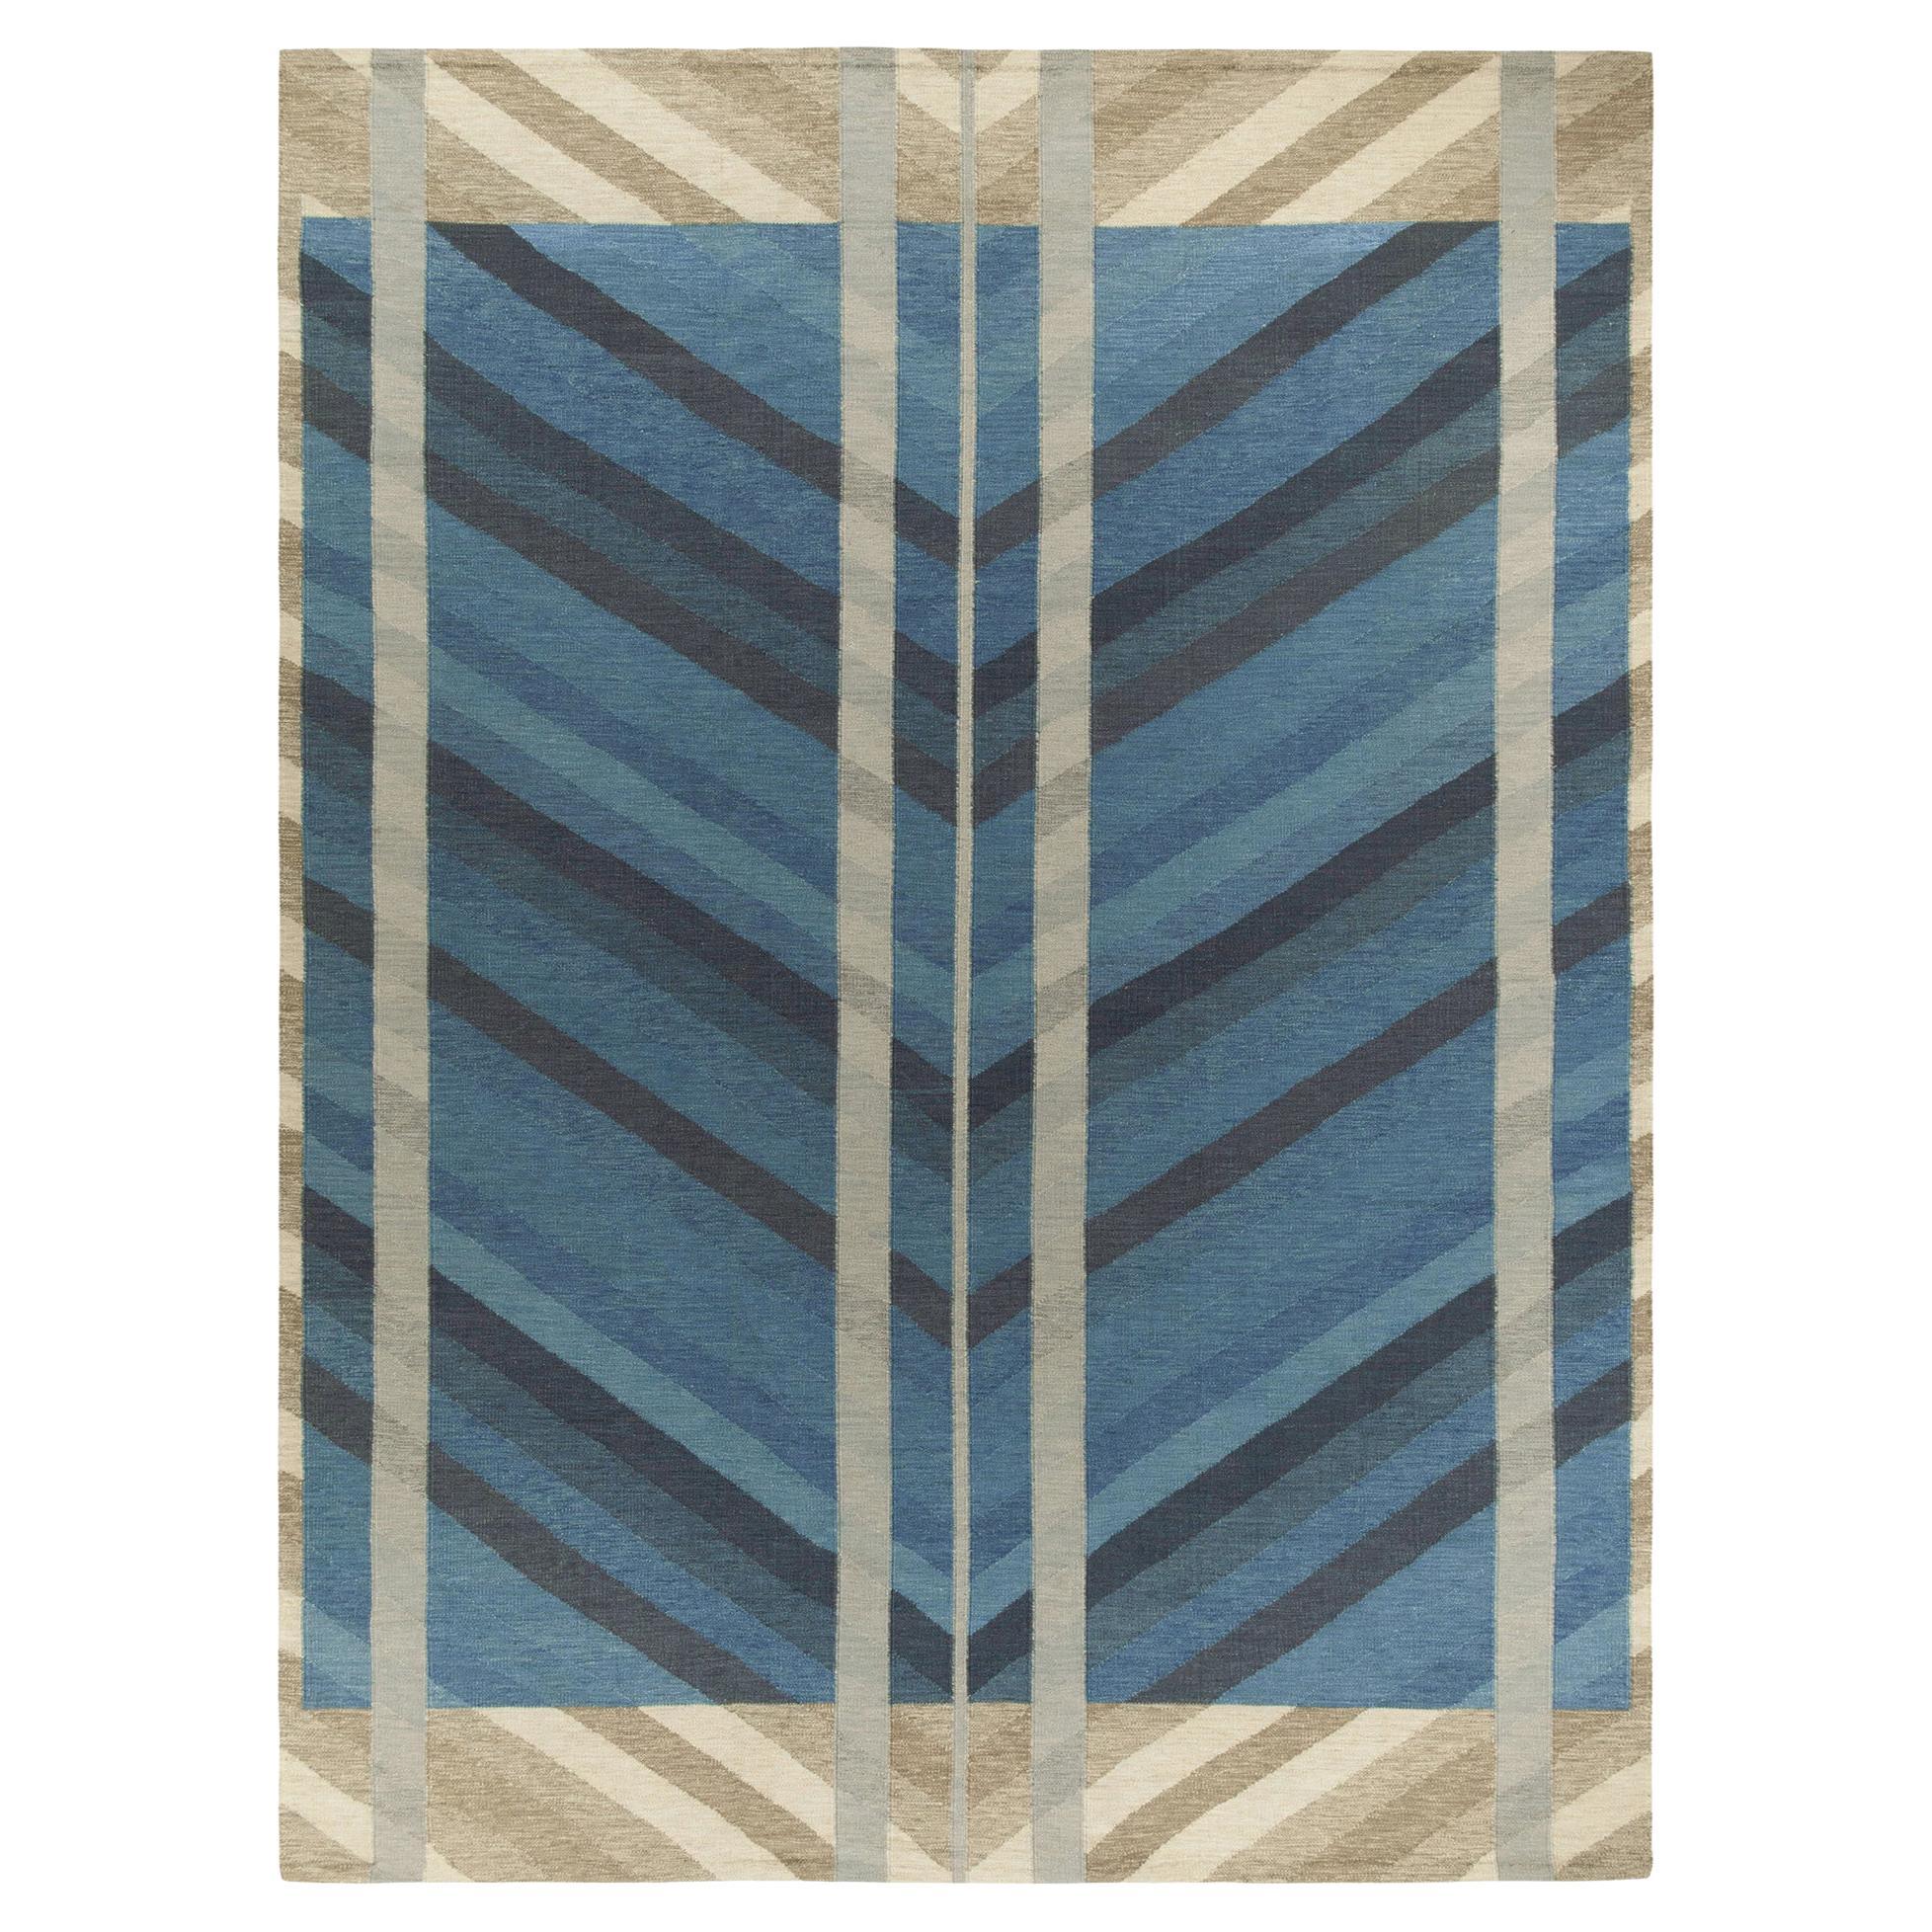 Teppich & Kelim-Teppich im skandinavischen Stil in Blau, Beige-Grau mit Chevron-Muster